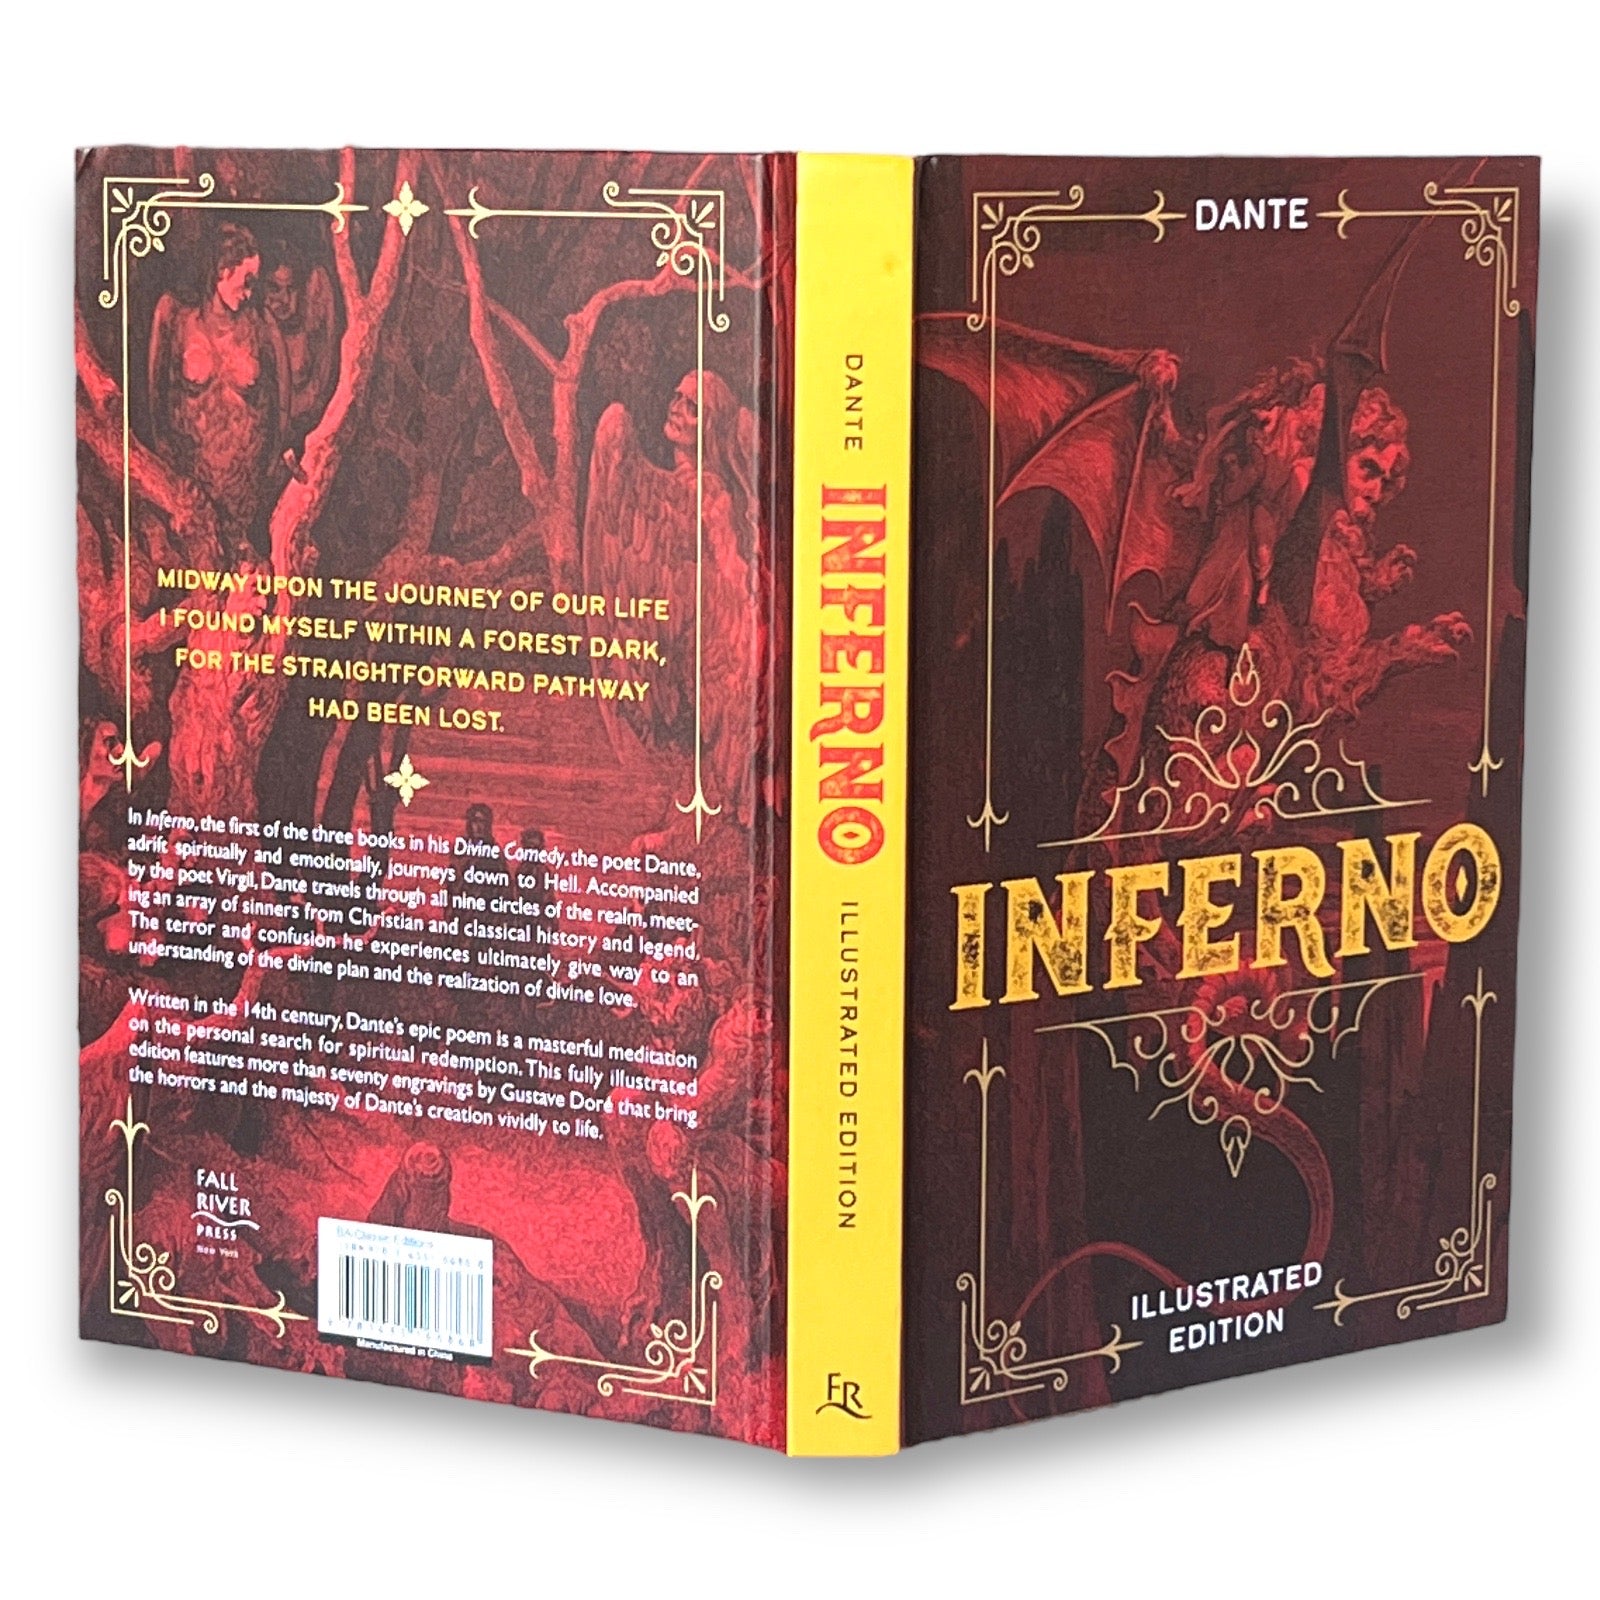 Livro Dante's Inferno (Deluxe Library Edition) em Promoção na